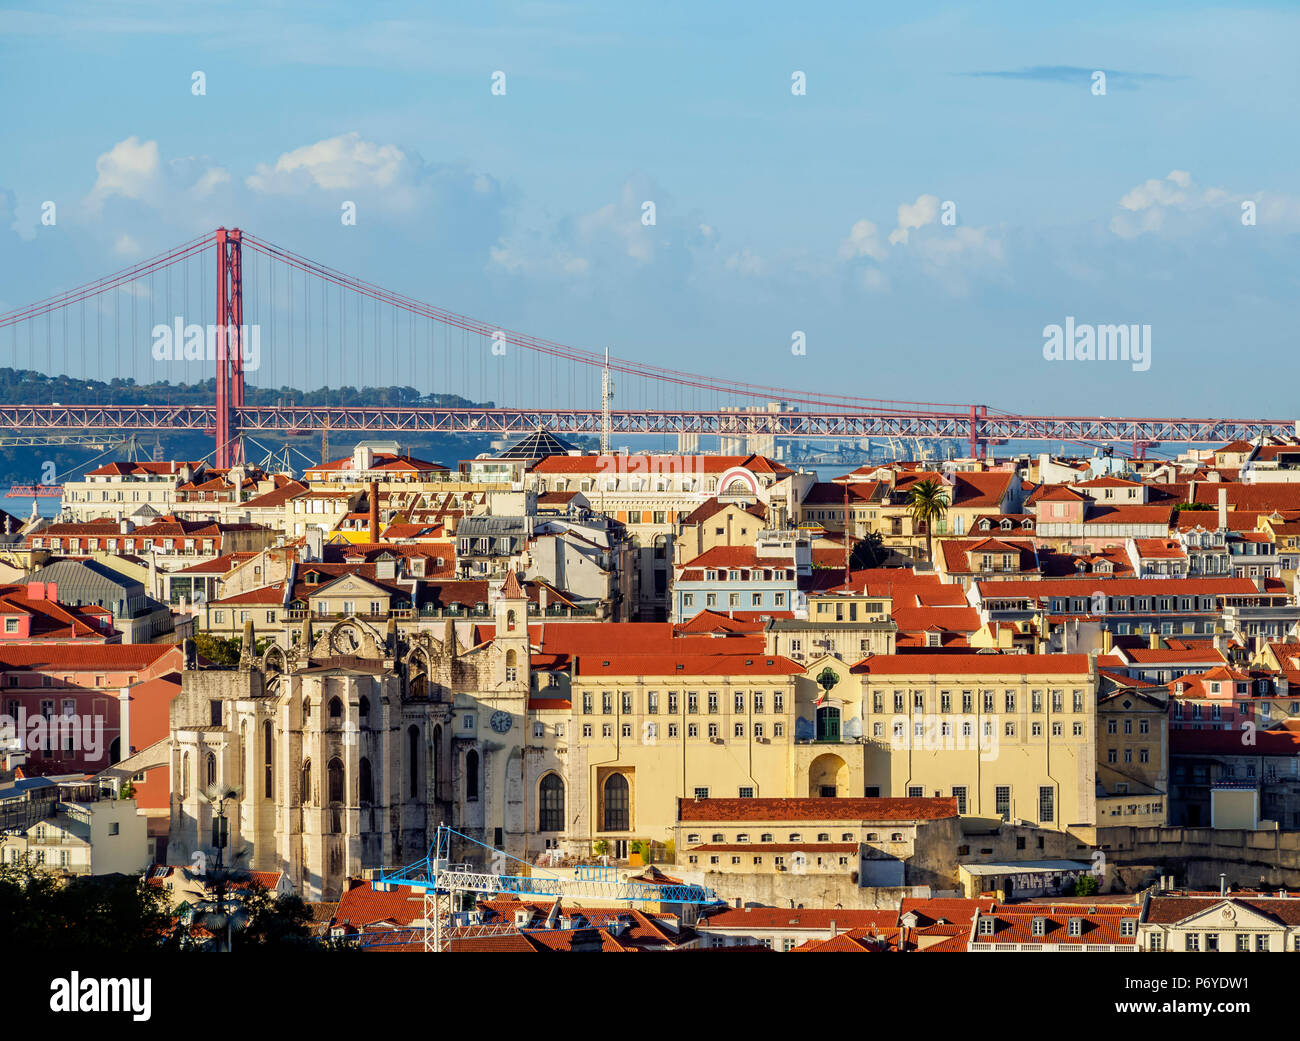 Portugal, Lisbonne, Miradouro da Graça, vue vers le couvent de Carmo et le pont 25 de Abril. Banque D'Images